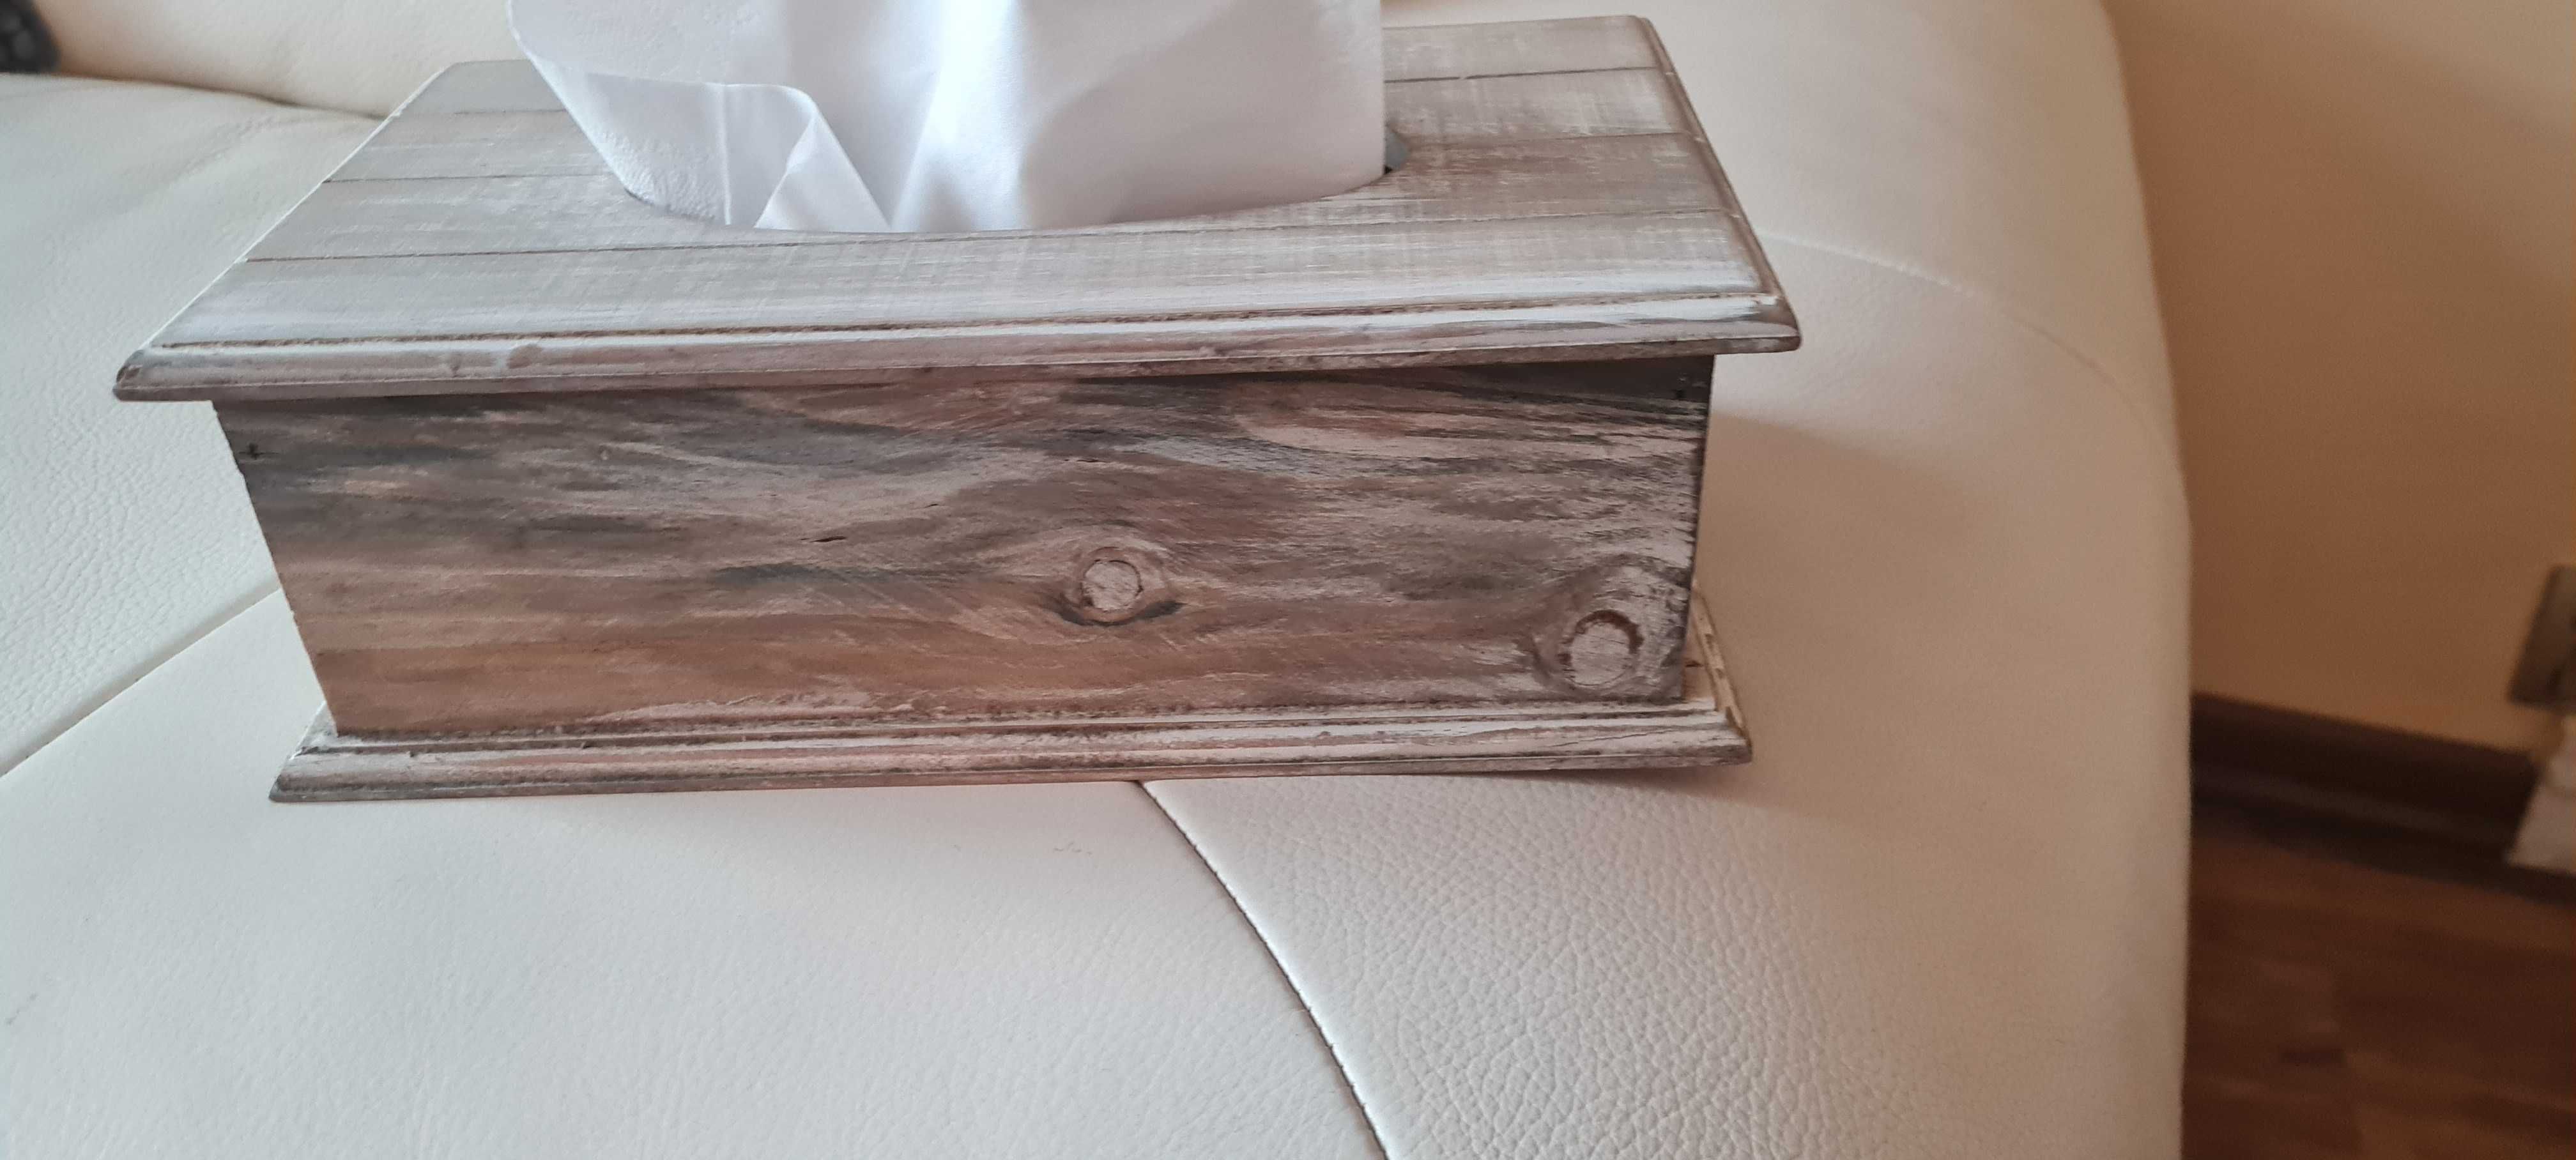 Pudełko drewniane na chusteczki higieniczne